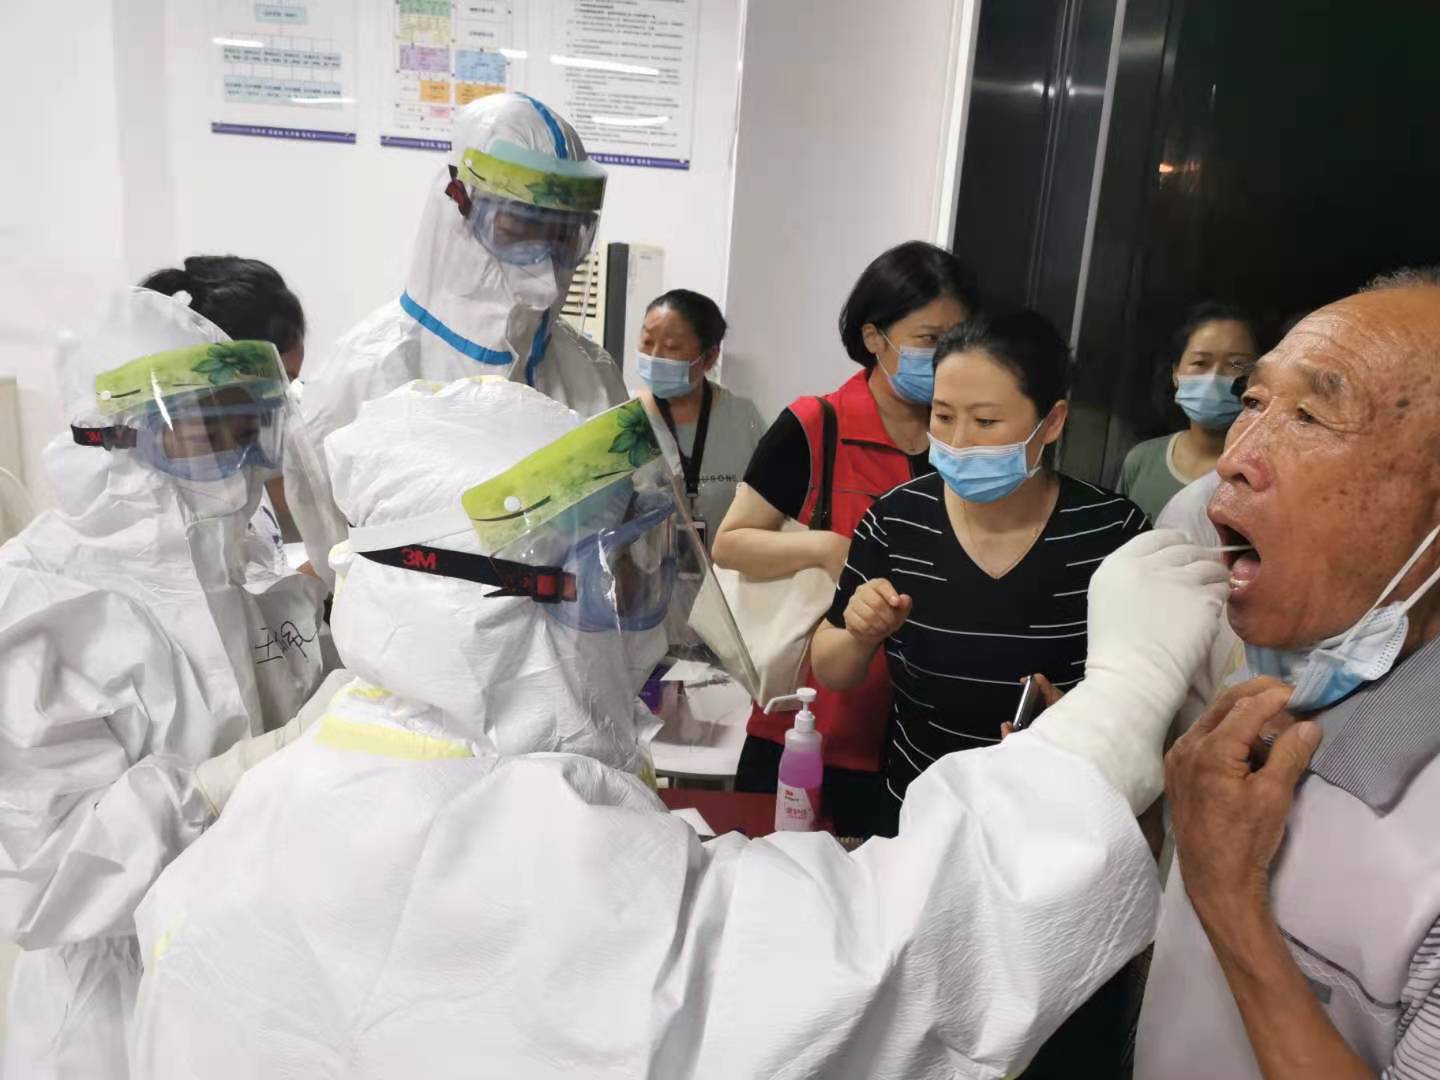 郑州大学附属医院1450名医务人员奔赴新冠病毒核酸筛查采样一线